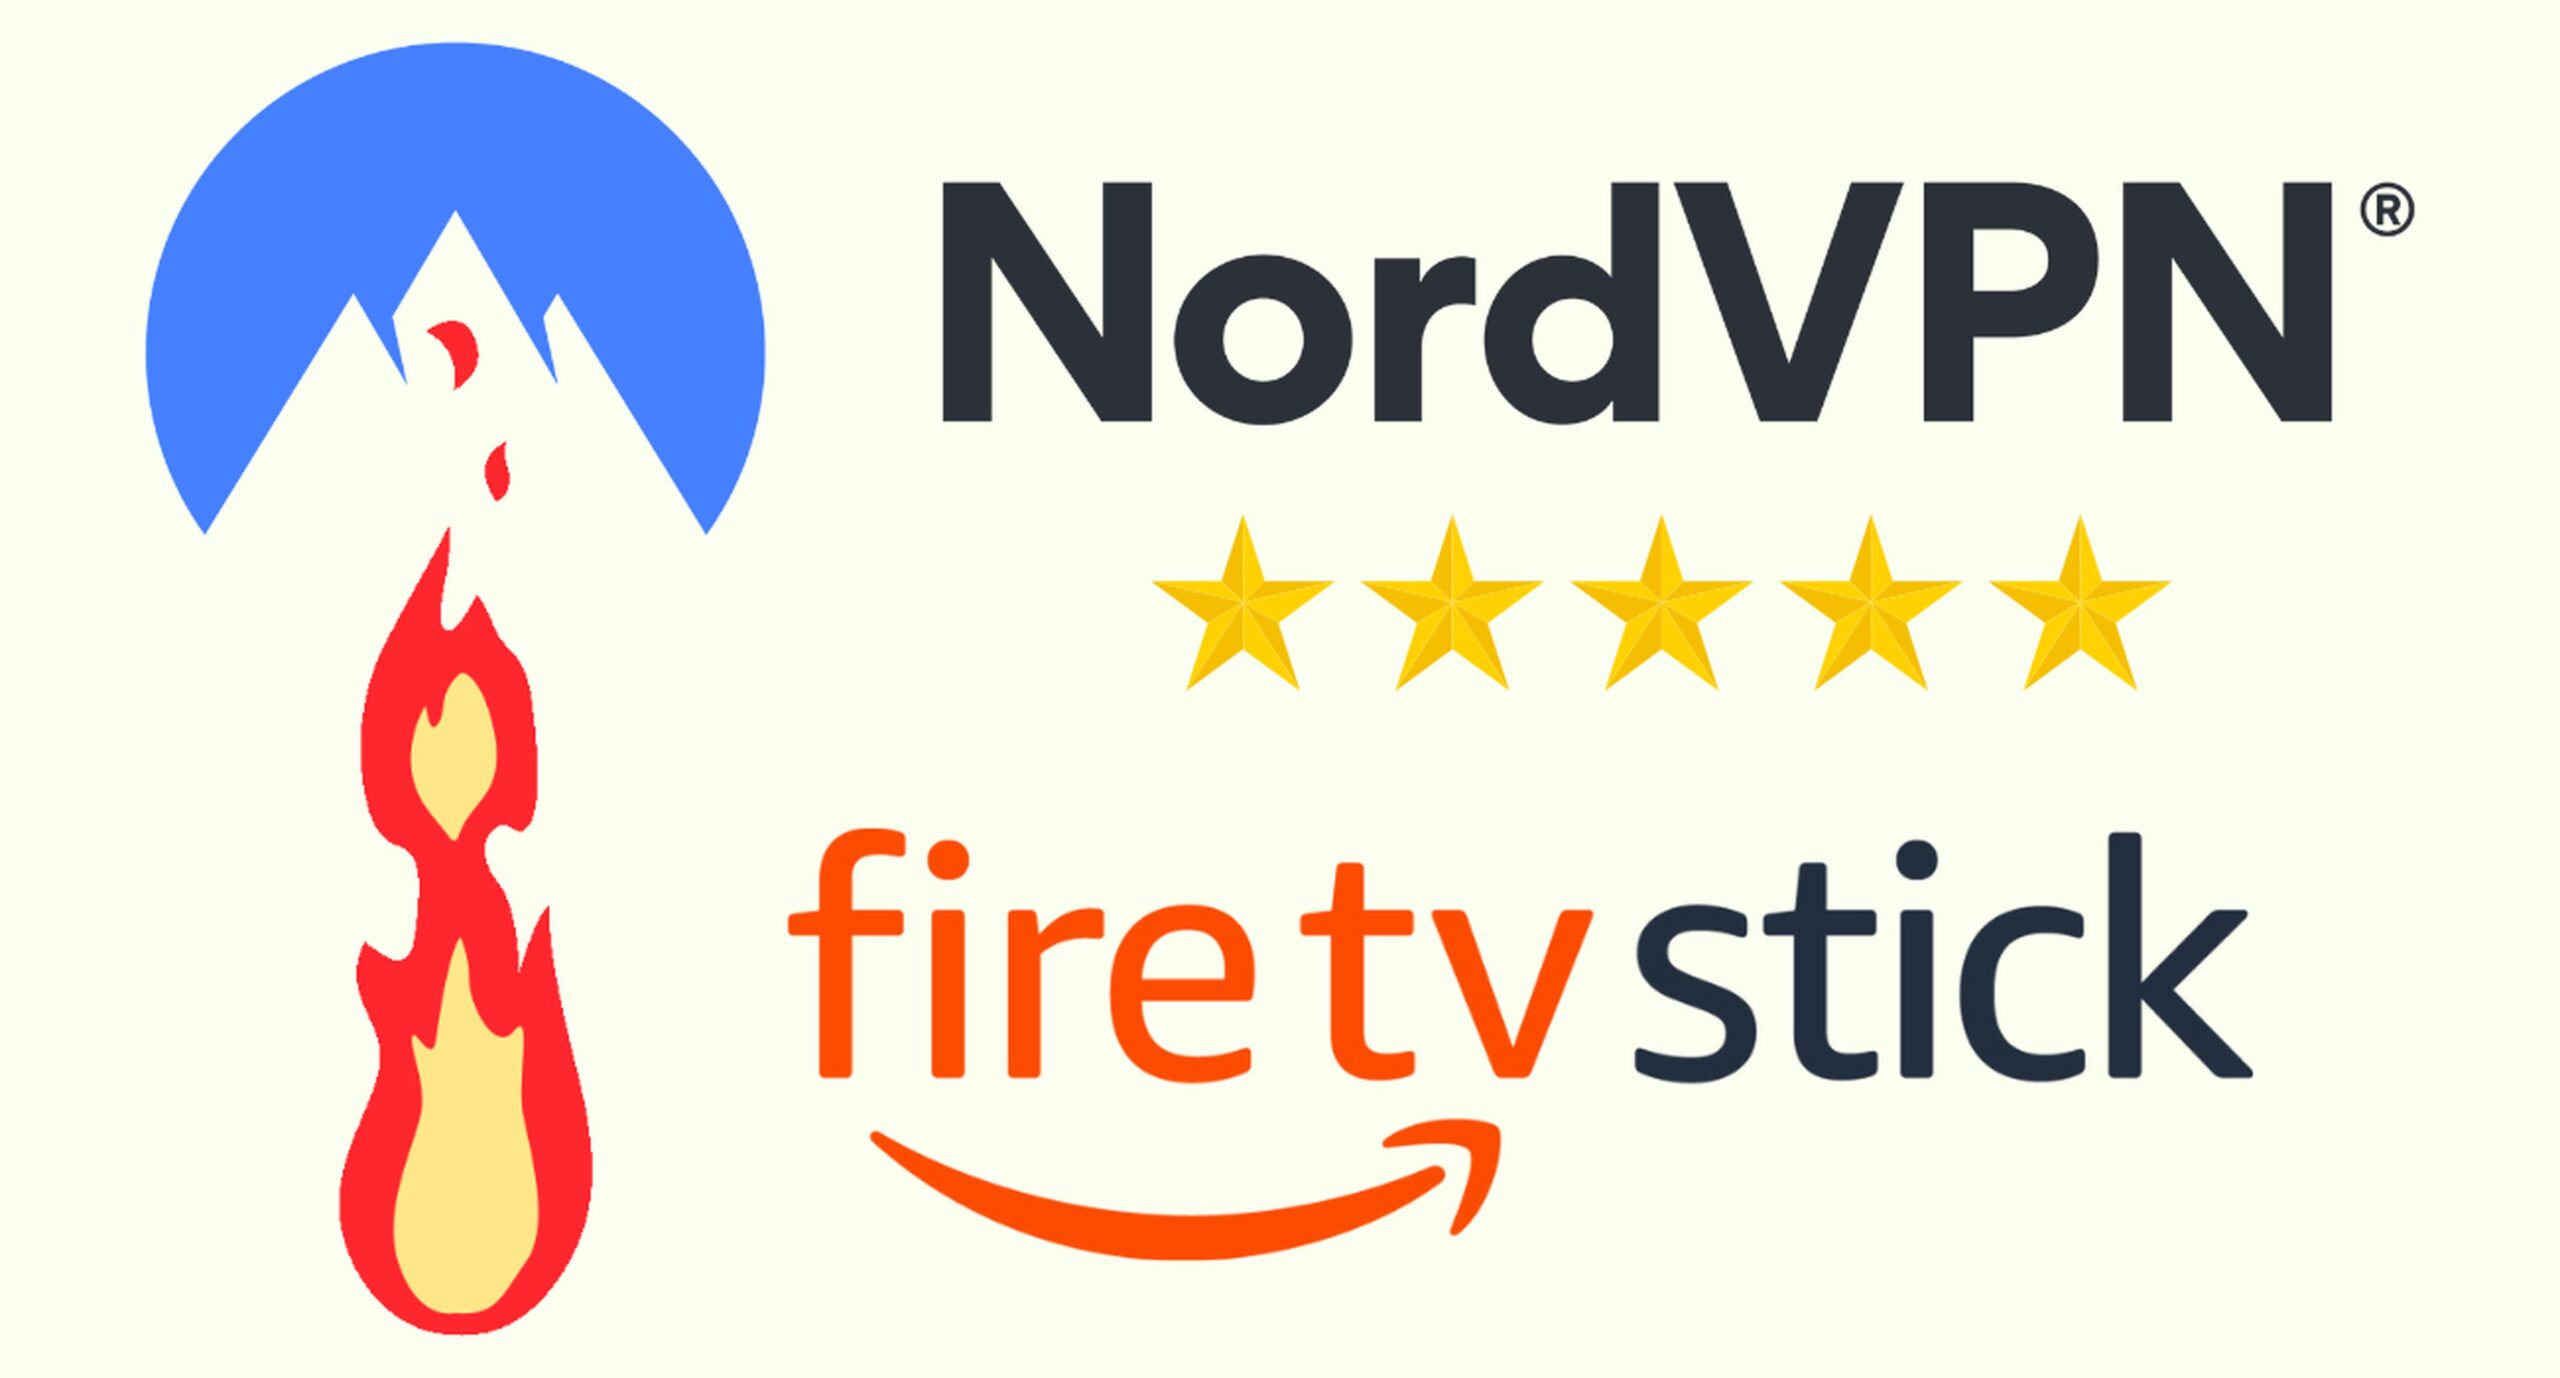 NORDVPN – Meilleur VPN pour la Fire TV Stick